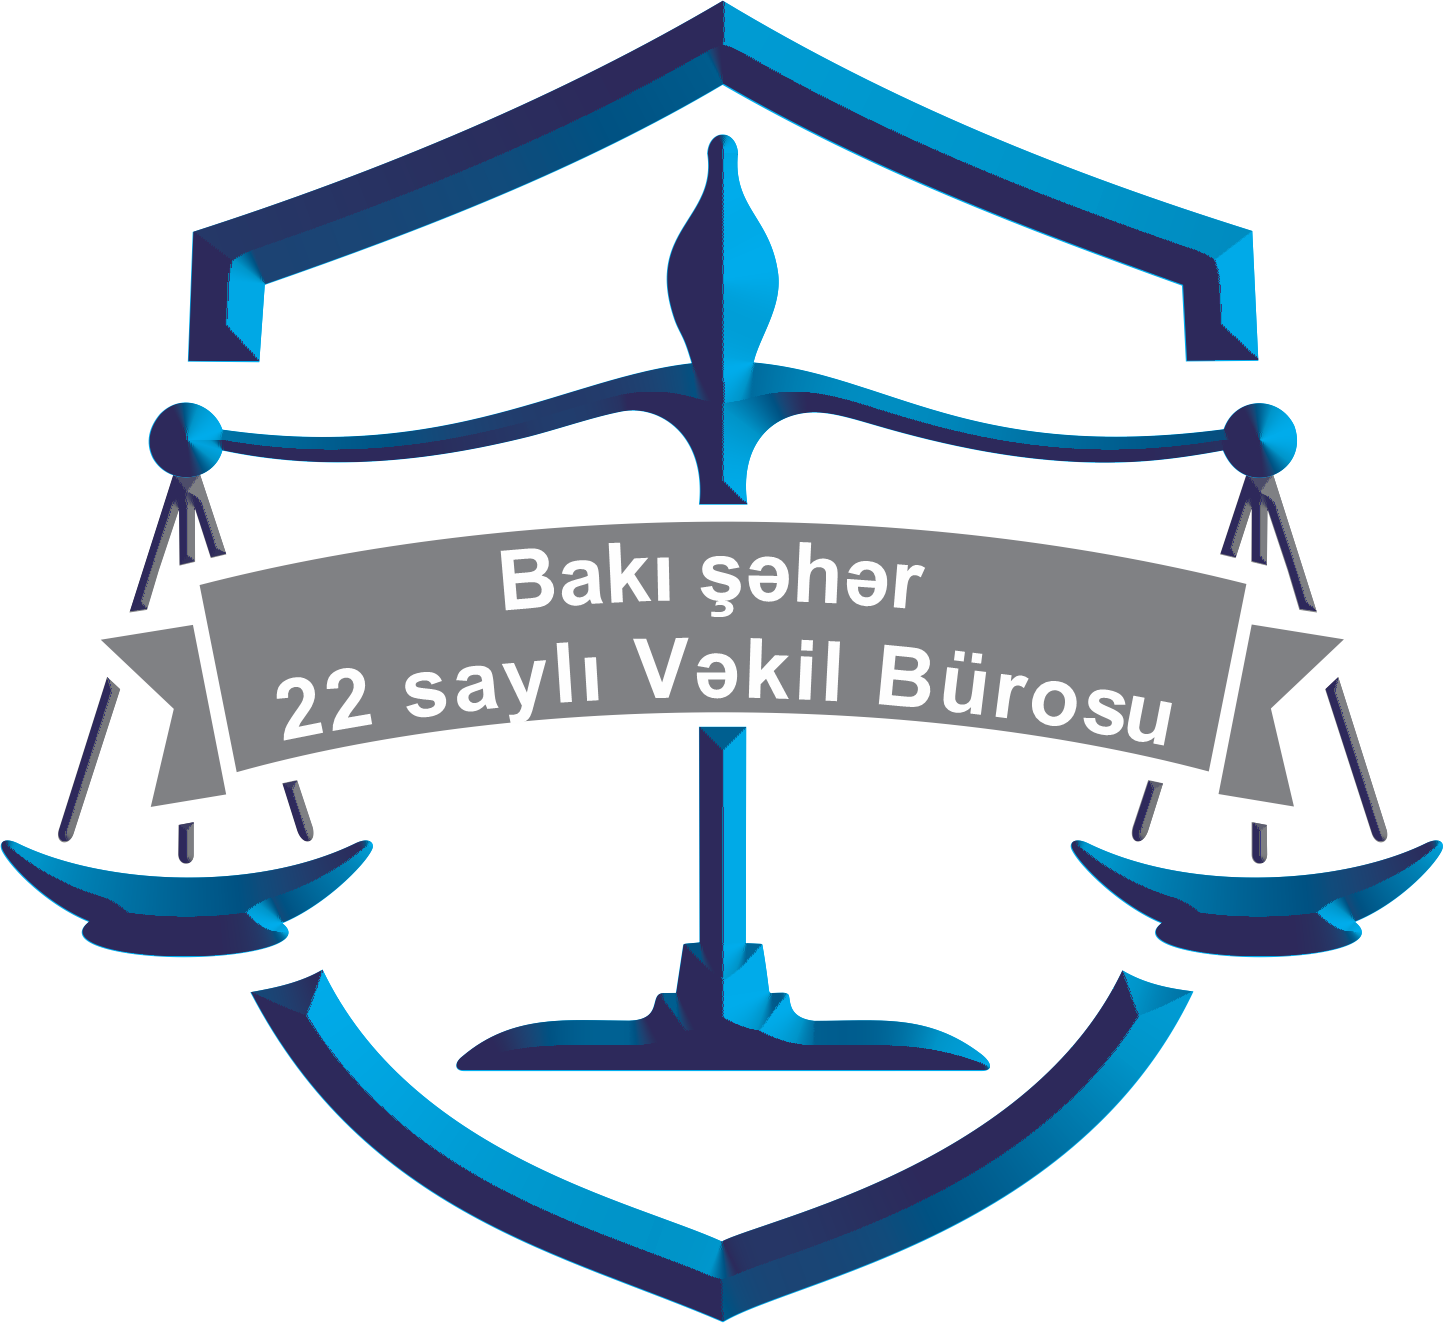 Bakı şəhəri 22 saylı Vəkil Bürosu